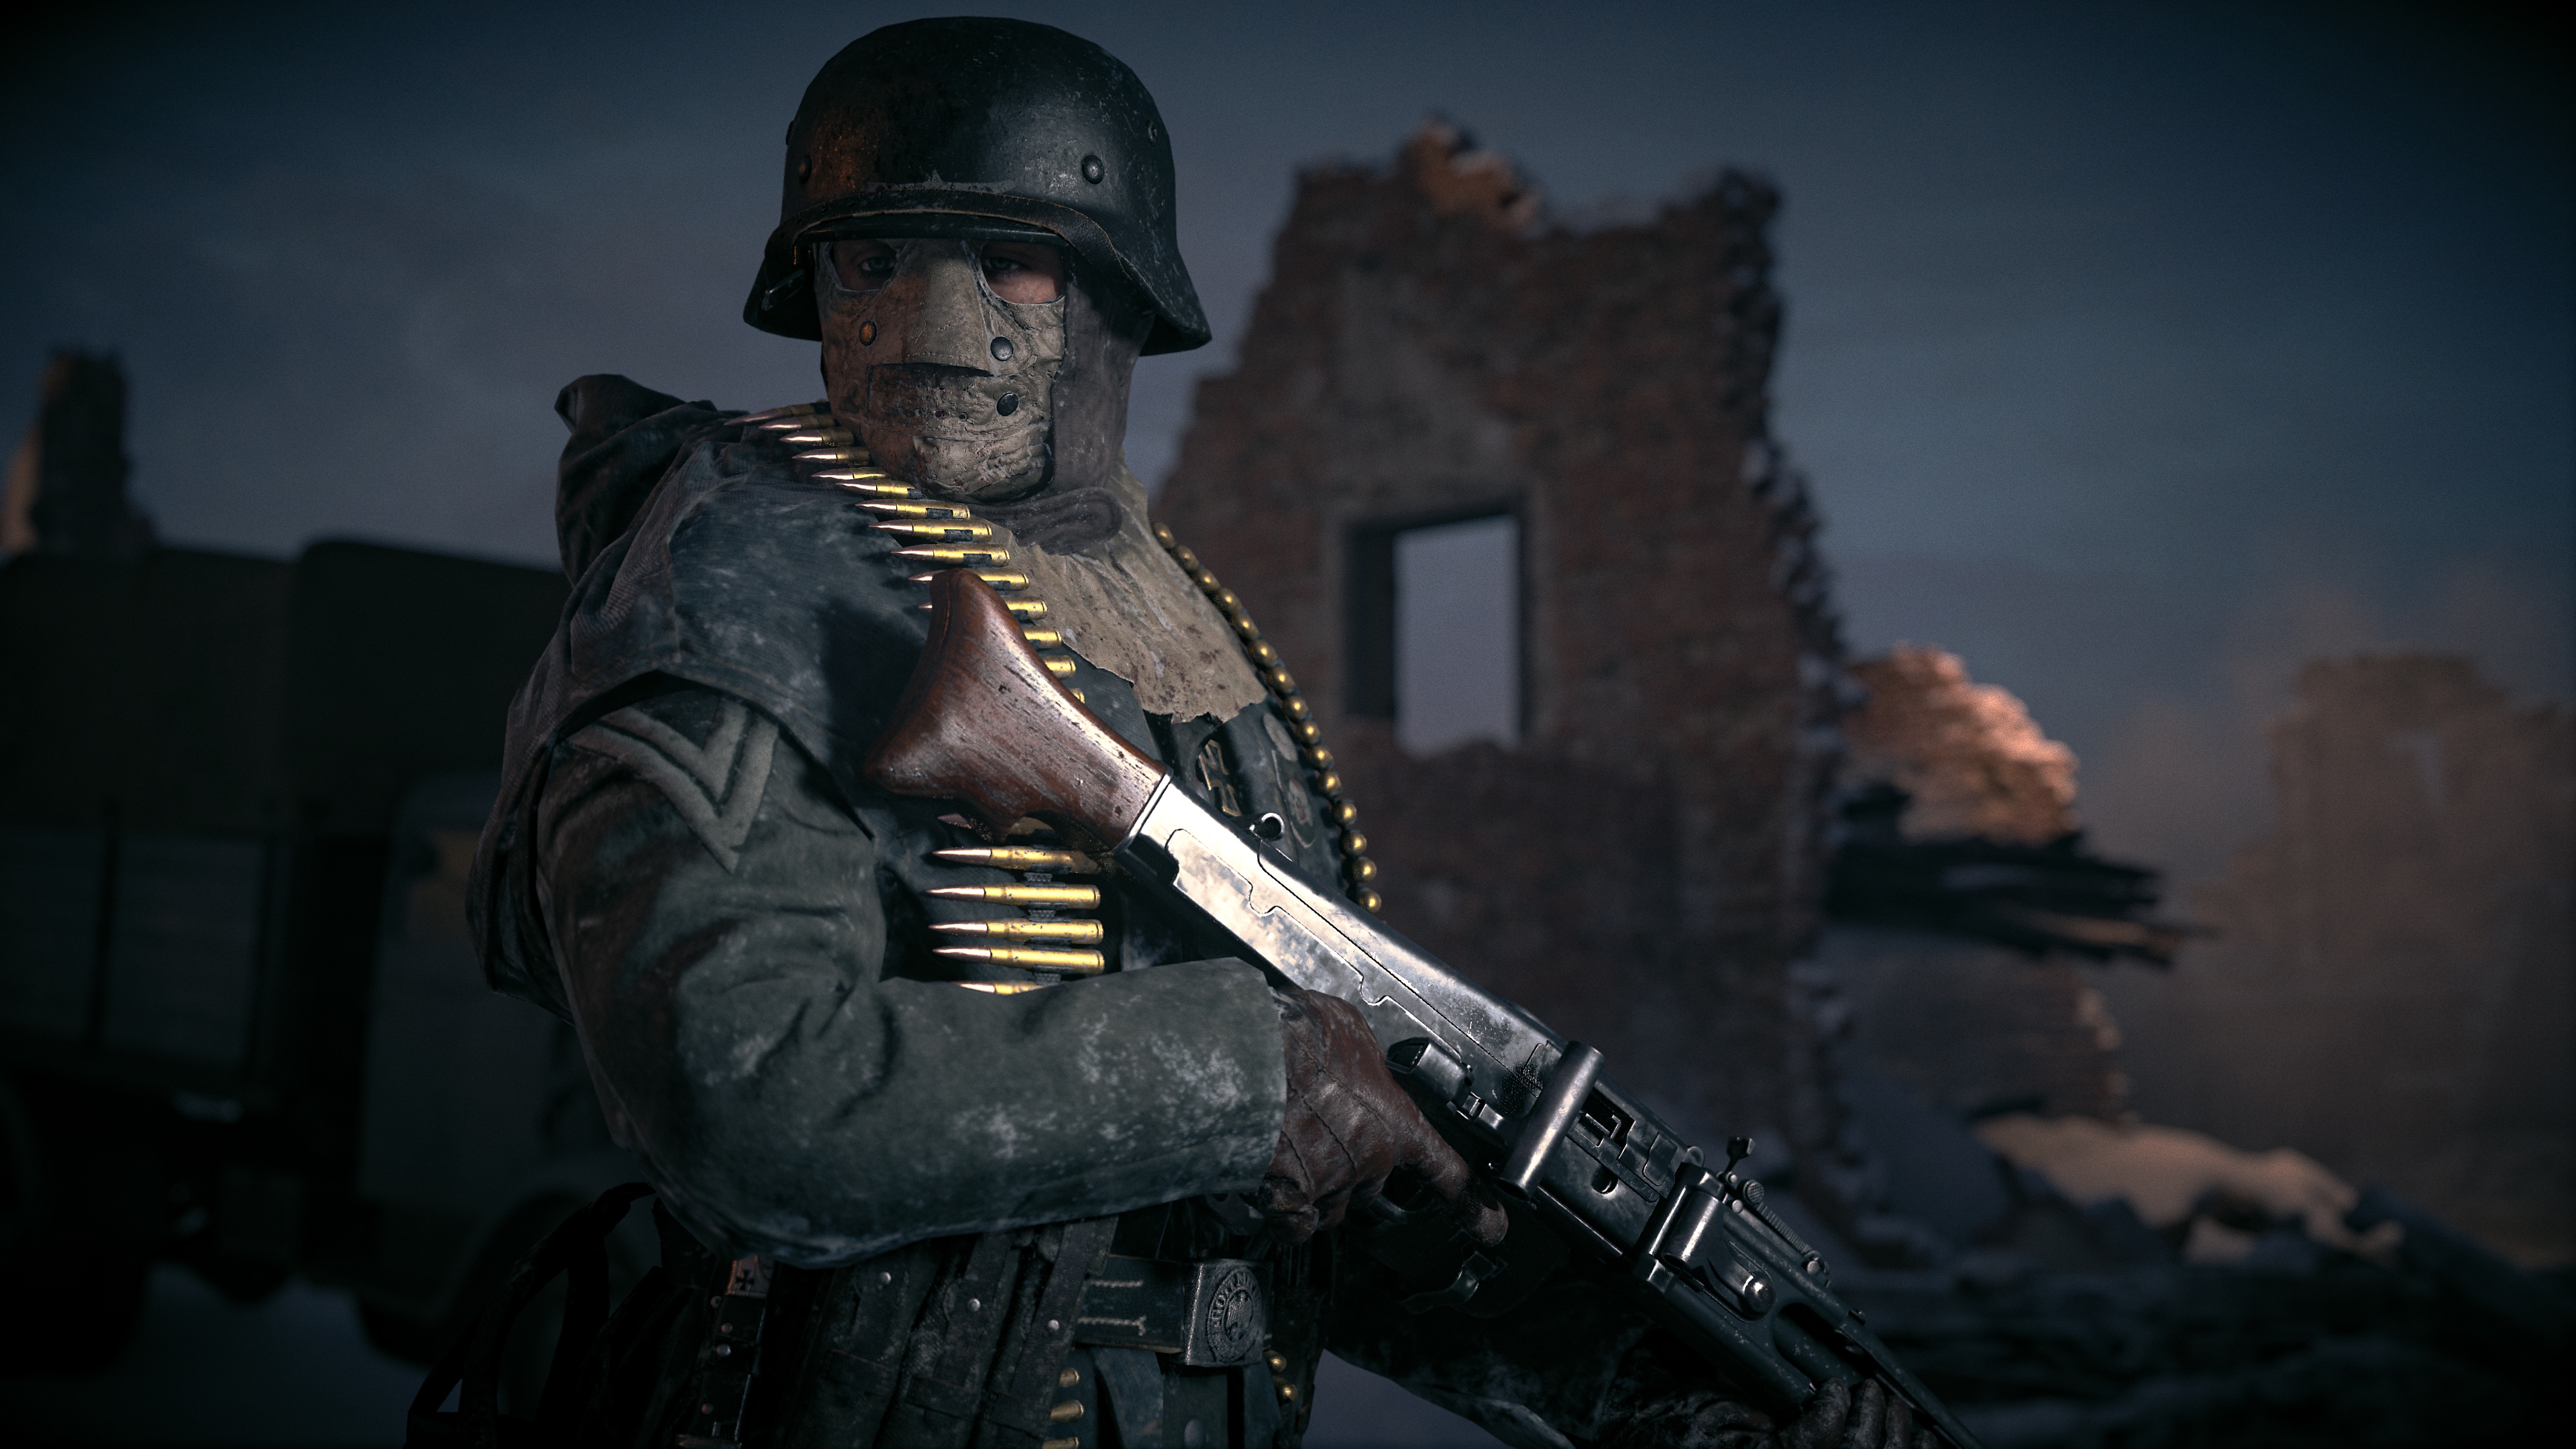 Captura de pantalla de Call of Duty Vanguard mostrando a un personaje portando un rifle